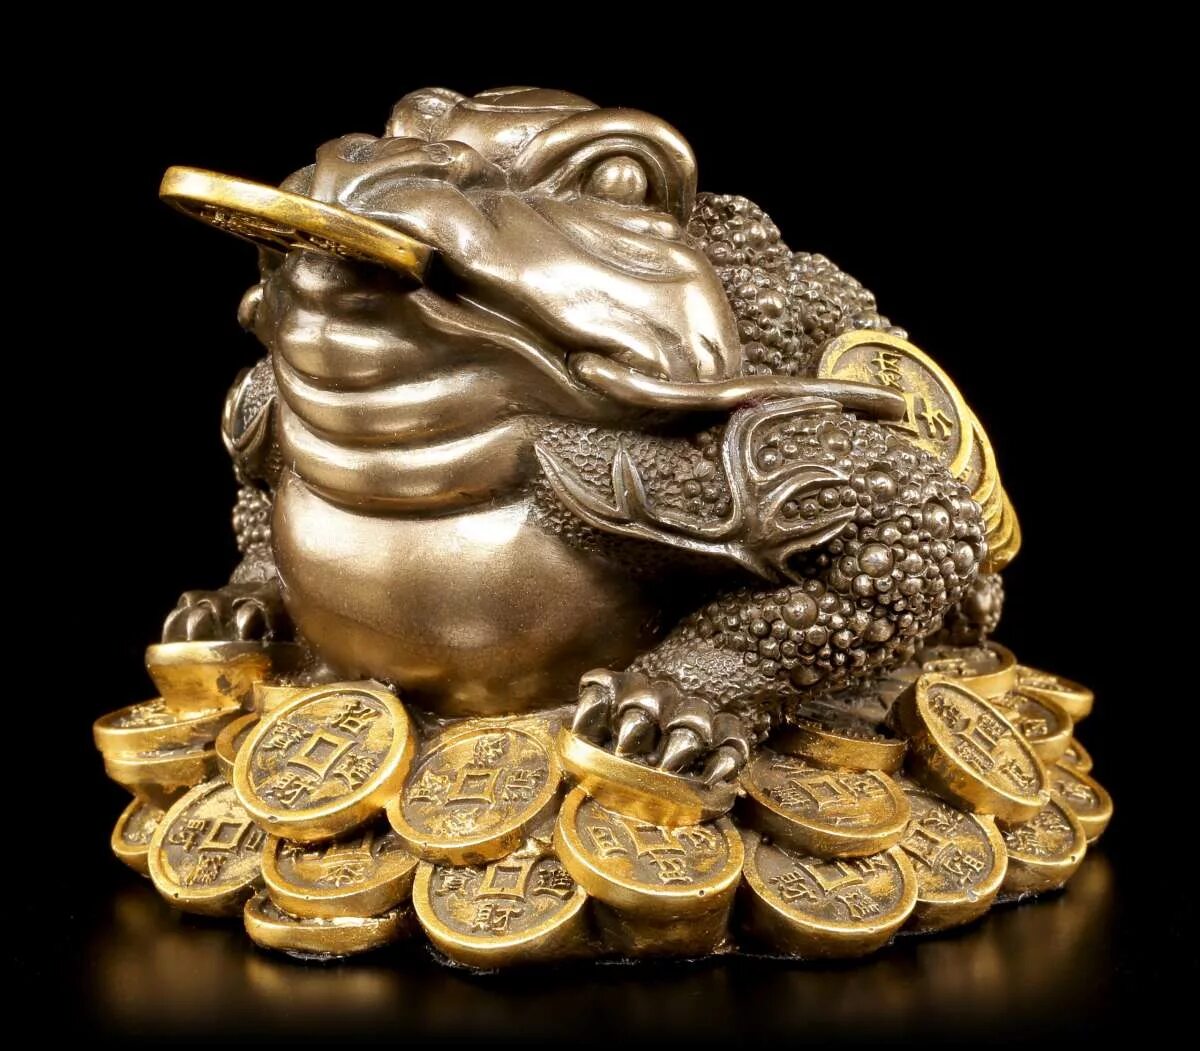 Картинка на заставку на удачу и деньги. Денежный талисман трехлапая жаба. Деньги богатство. Привлечение денег. Символ успеха и богатства.